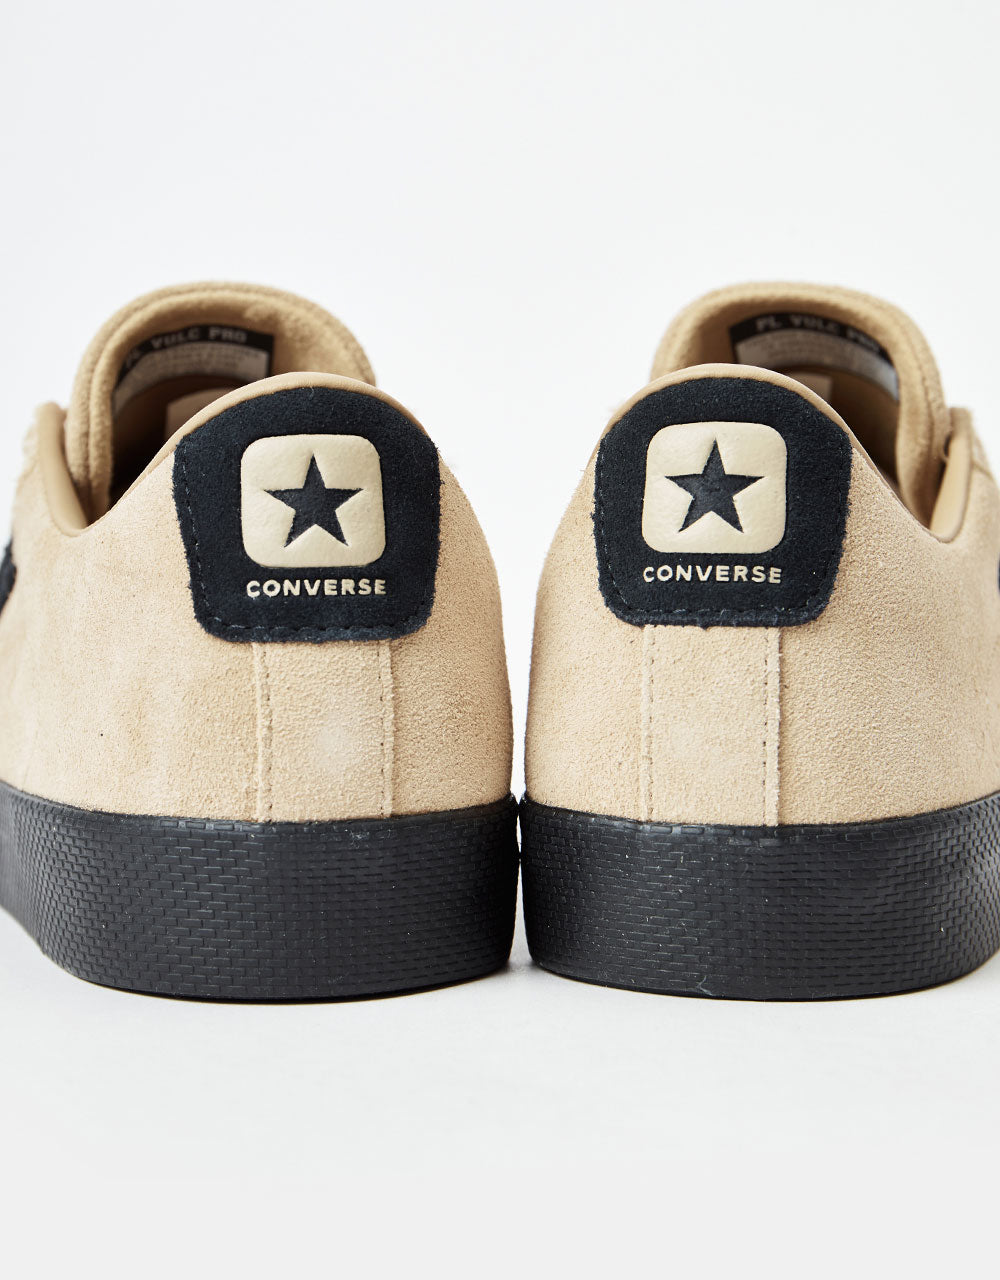 Converse Pro Leather Vulc Pro Skate Shoes - Nomad Khaki/Black/Black